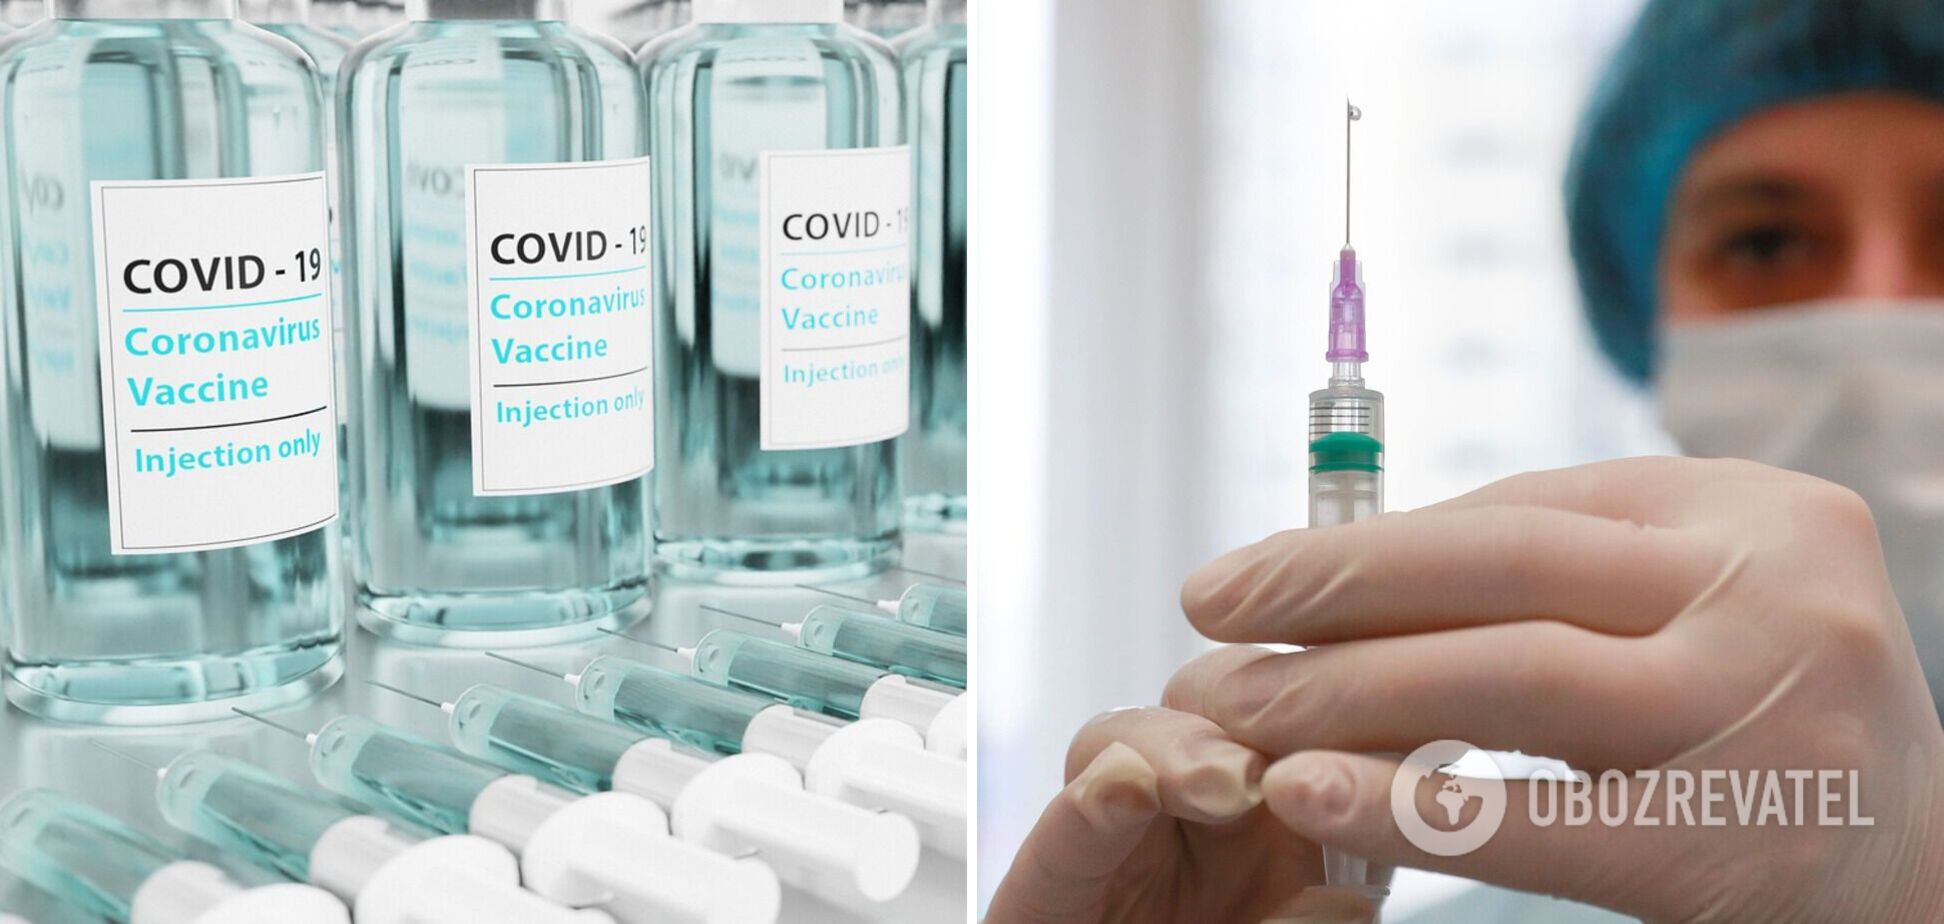 У 'Феофанії' киян вакцинували проти коронавірусу під виглядом медиків – ЗМІ